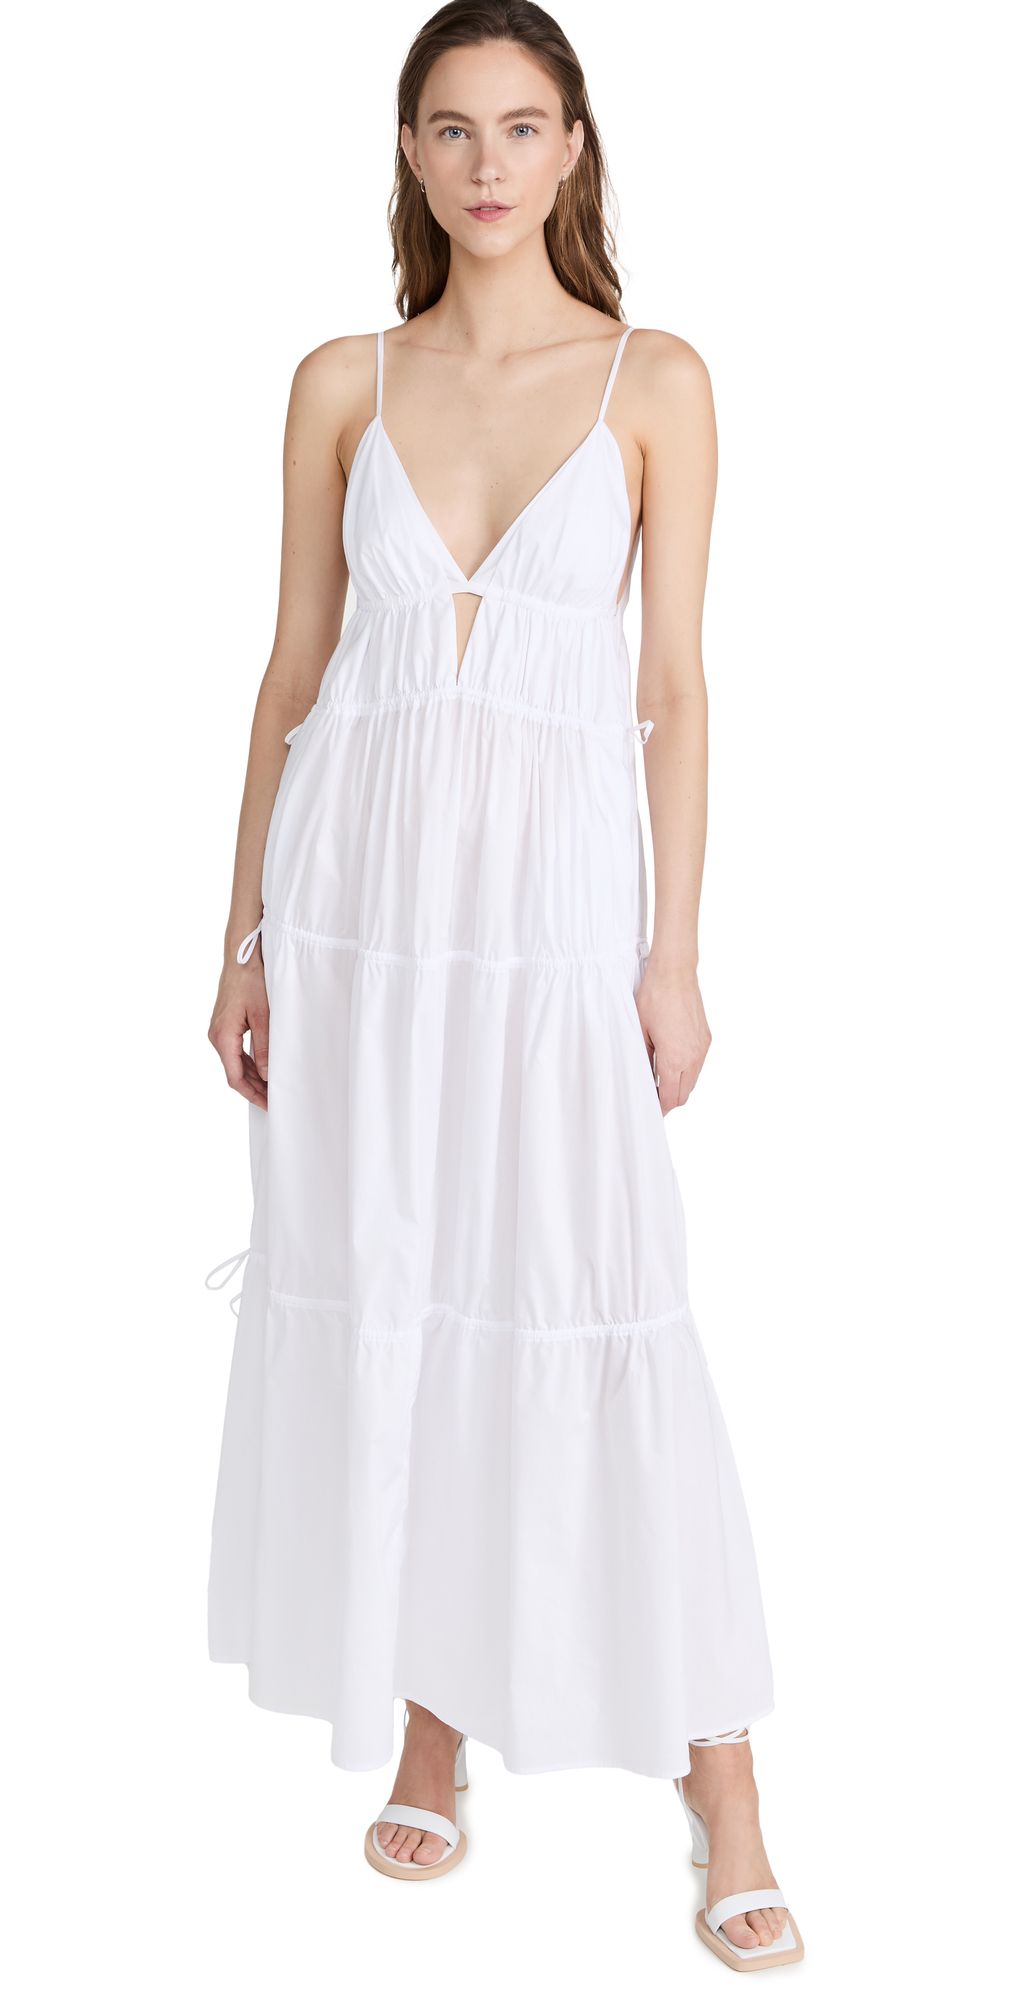 Jonathan Simkhai April Cotton Dress | Shopbop